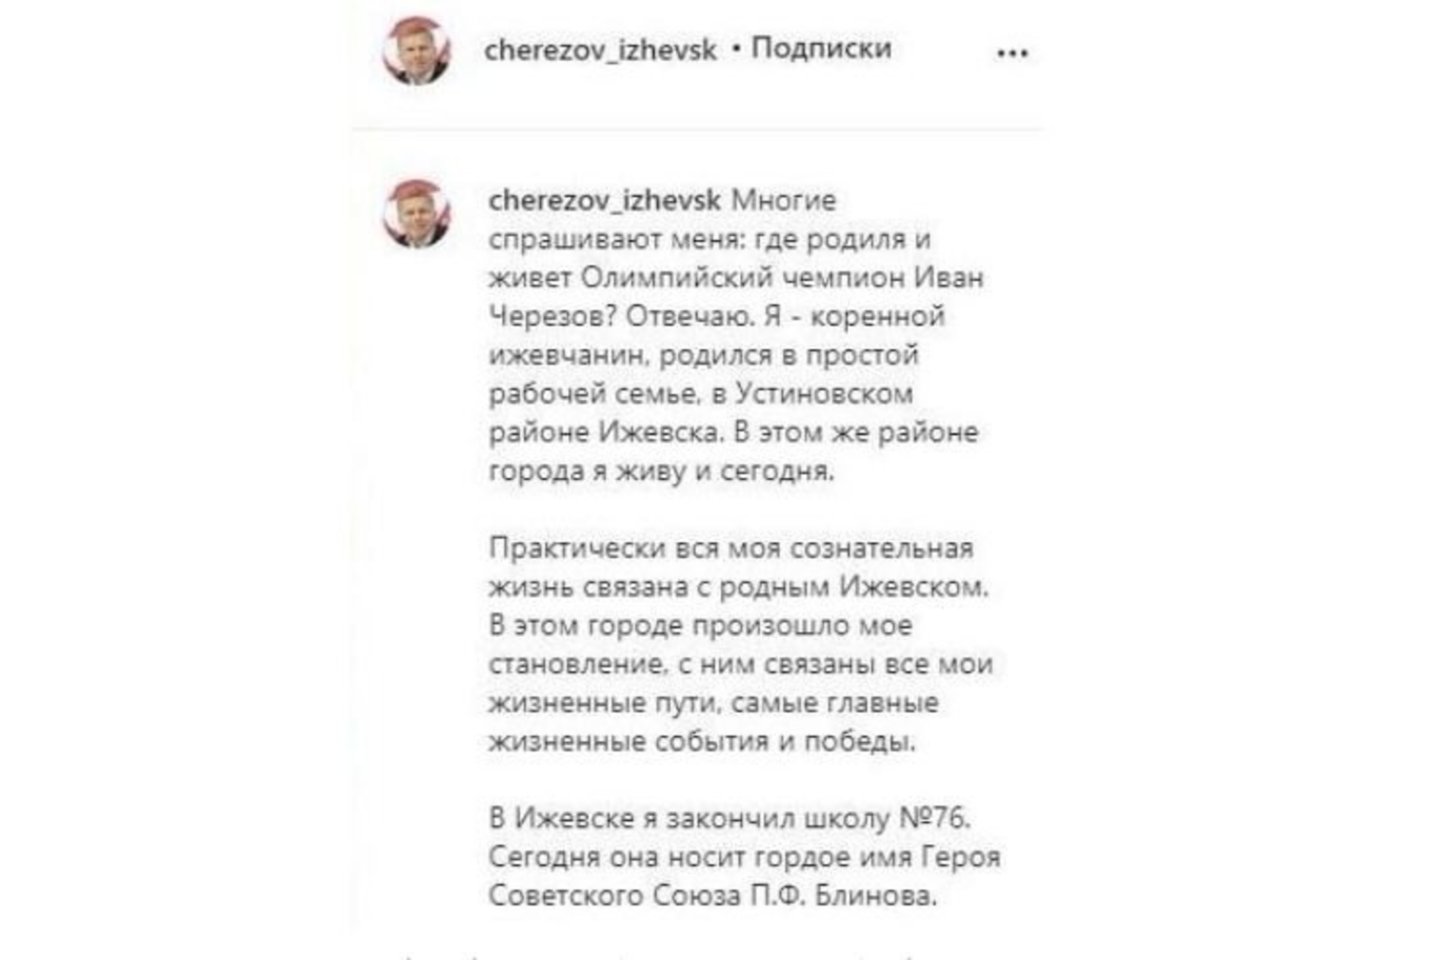  Rusijos sportininkas save vadino olimpiniu čempionu, nors tokiu ir nebuvo<br> instagram.com